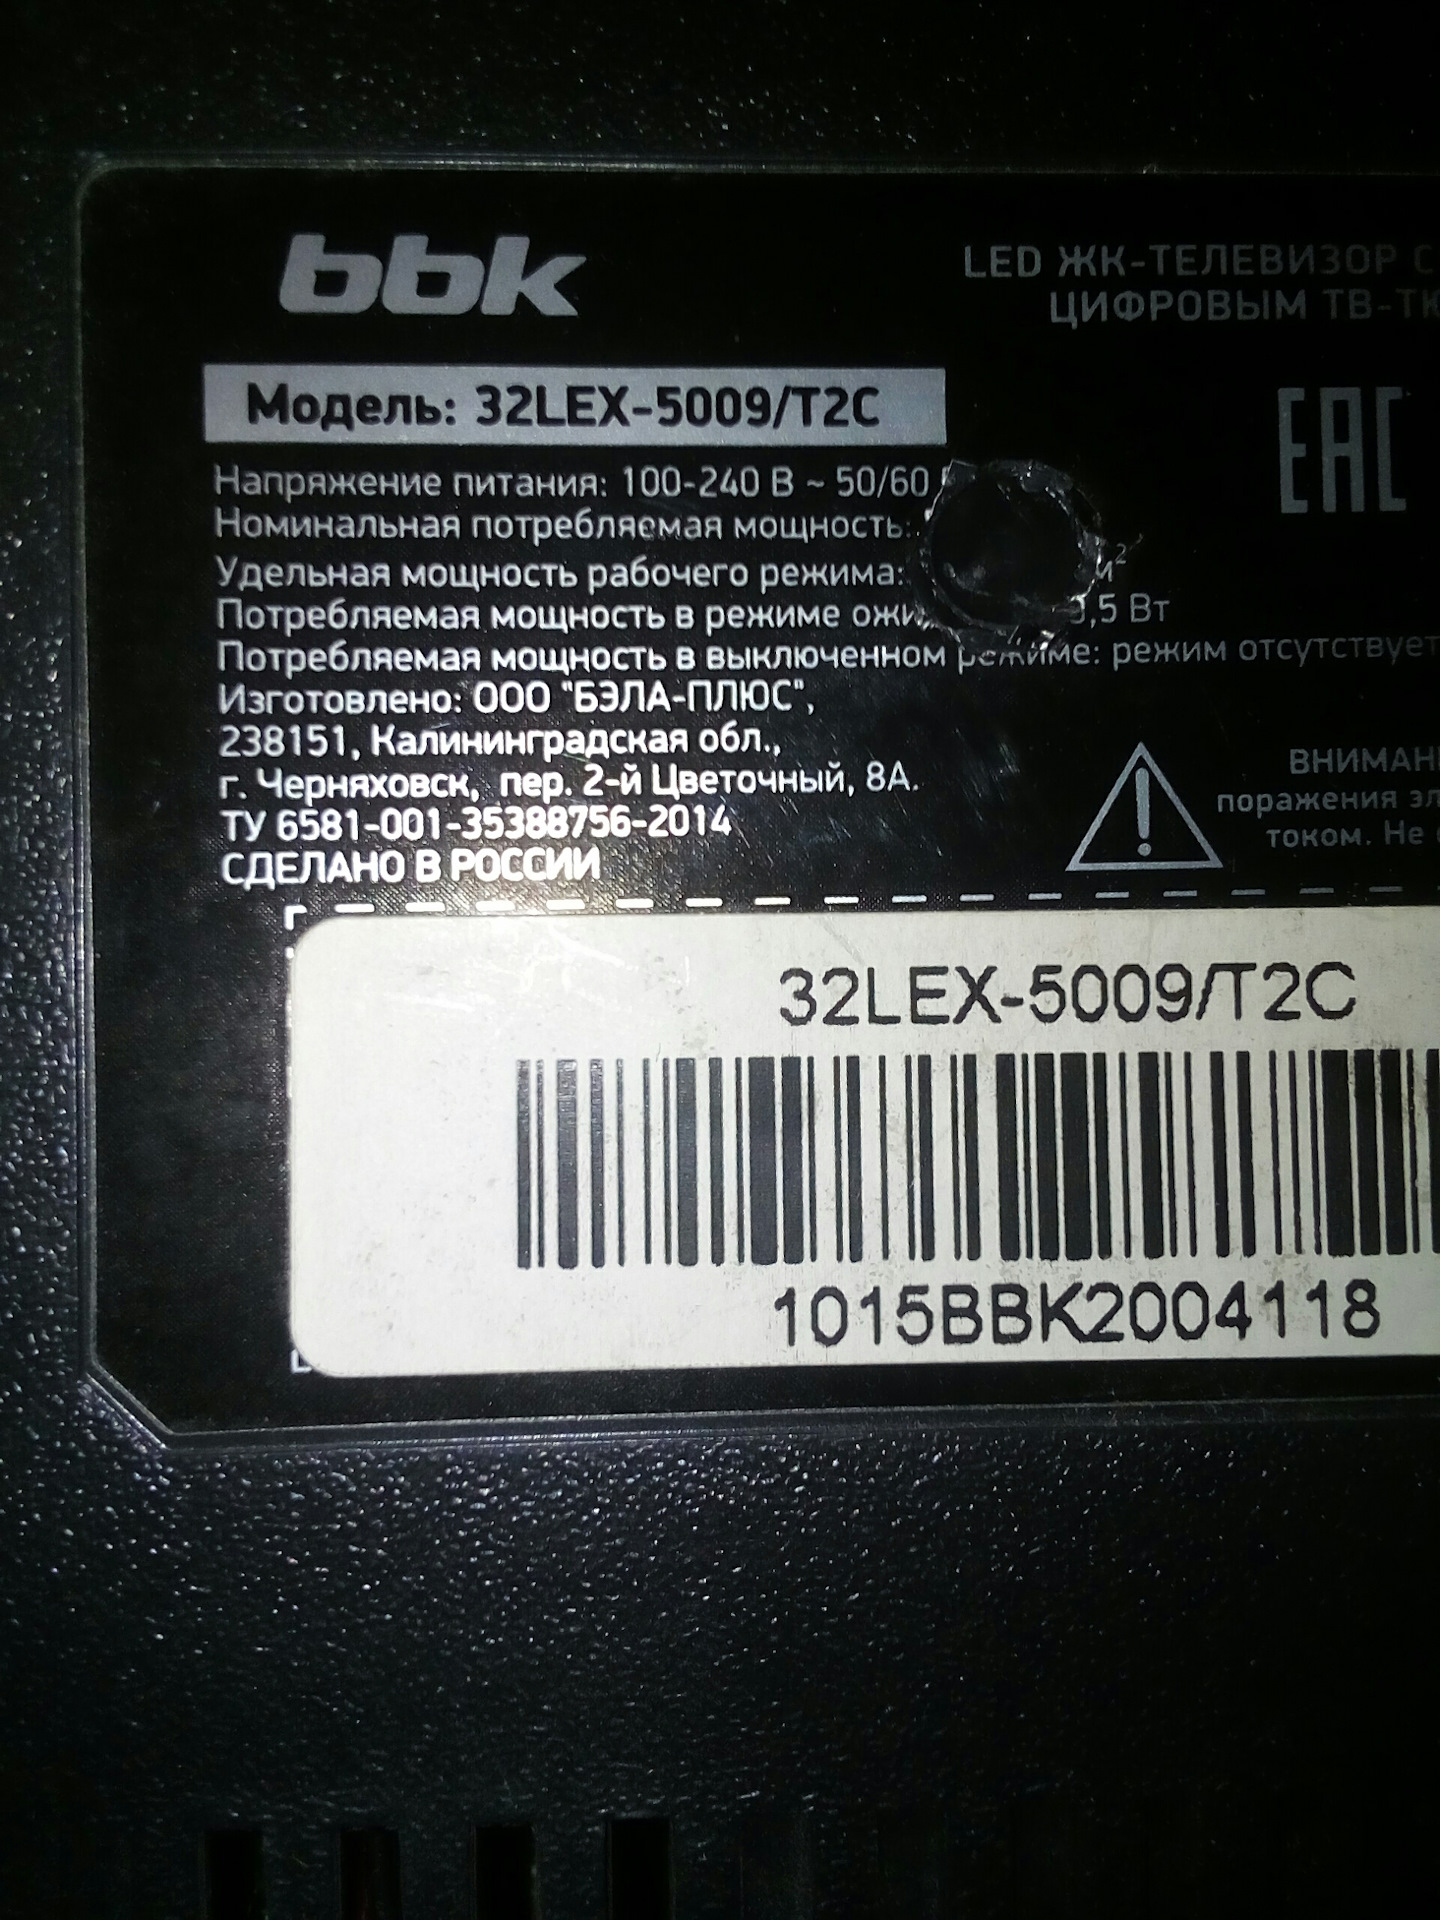 Прошивка bbk 32lex. Серийный номер телевизора BBK. Телевизор BBK 32lex-5031. Телевизор BBK 32 - 5009/t2c. BBK 32 Lex 5009/t2c подставка.